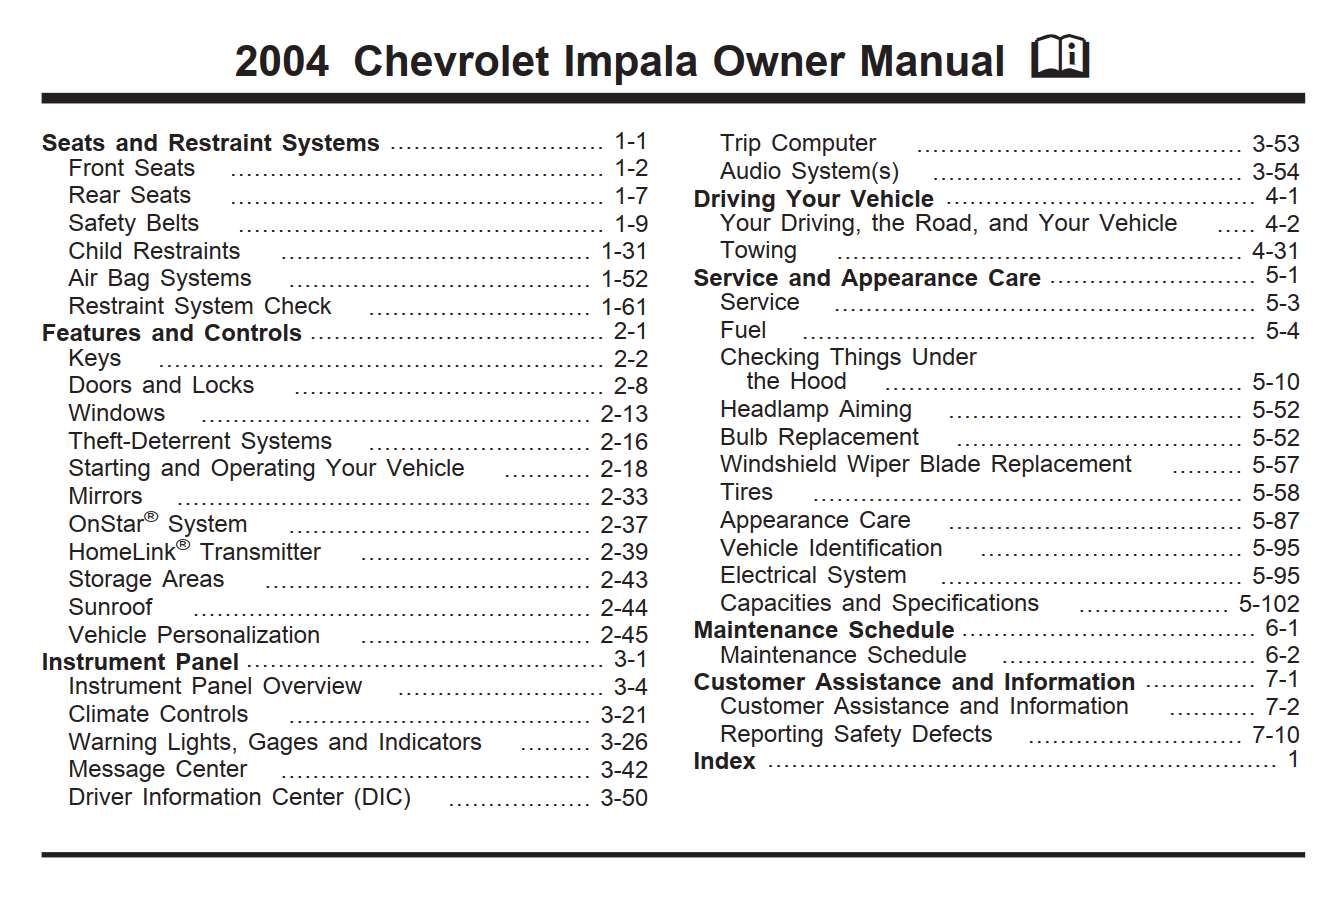 2010 impala online repair manual pdf free download